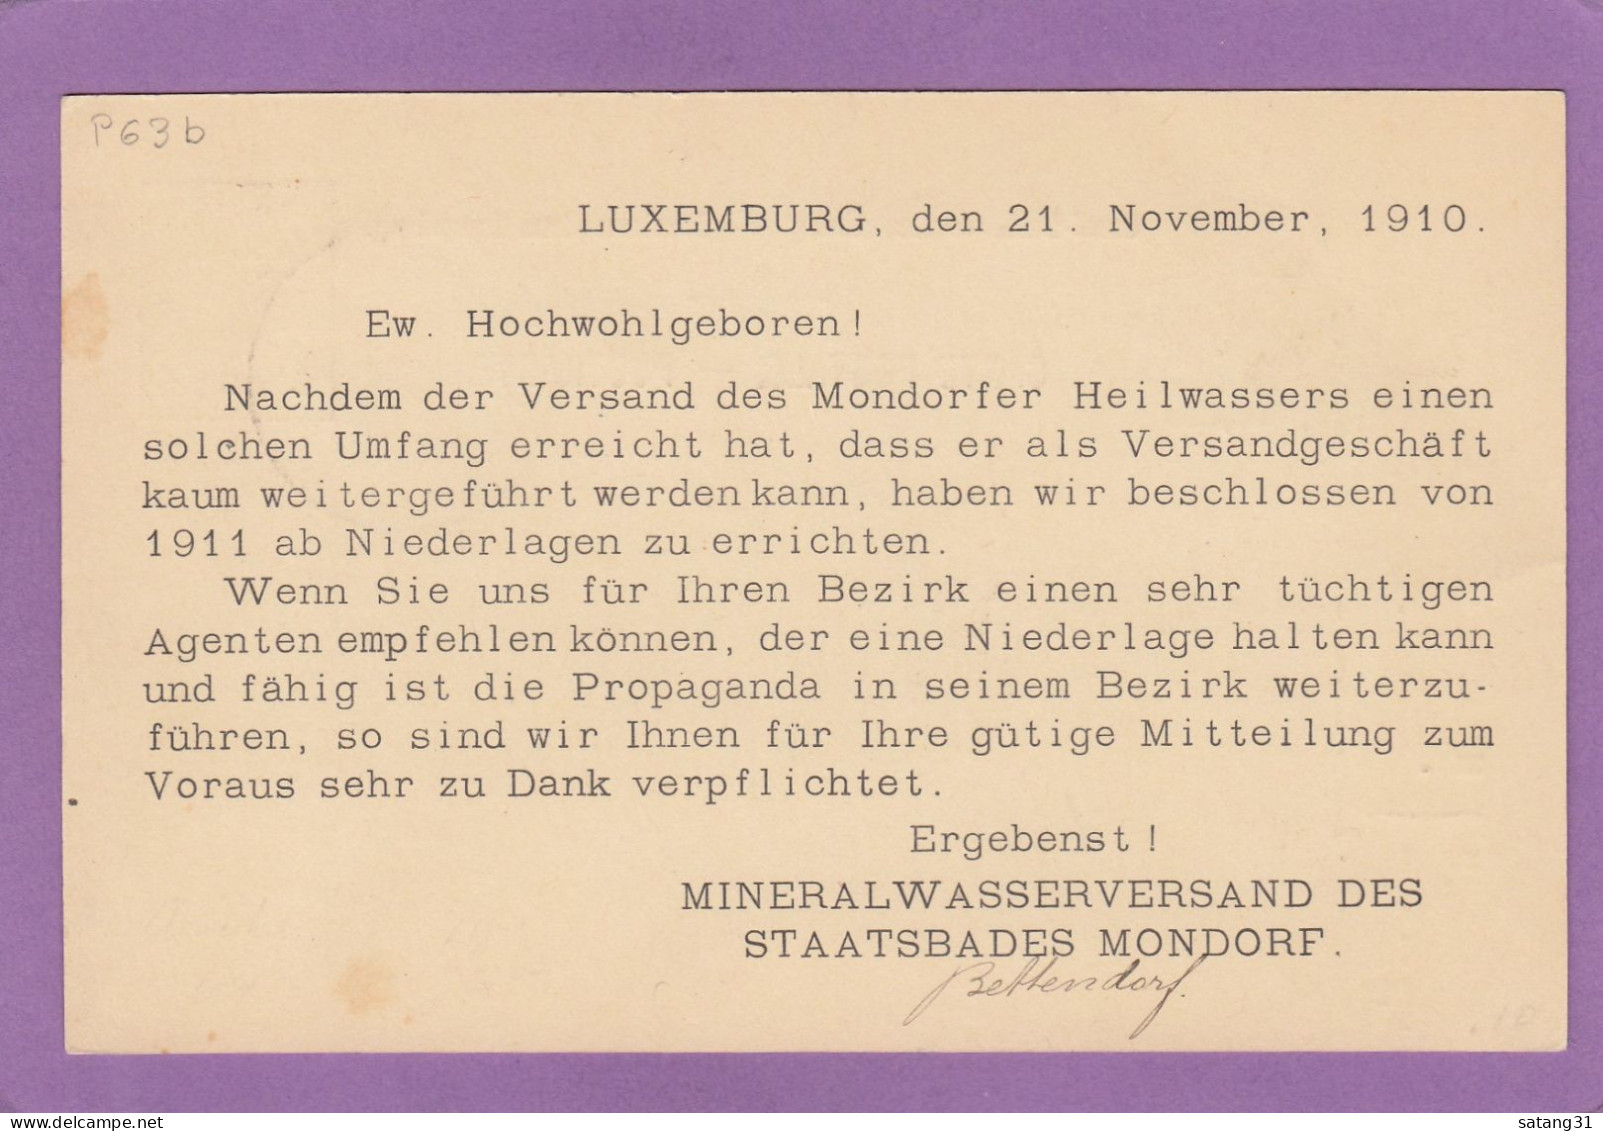 MINERALWASSERVERBAND DES STAATSBADES MONDORF. GANZSACHE NACH TORGAU,DEUTSCHLAND,1910. - Stamped Stationery